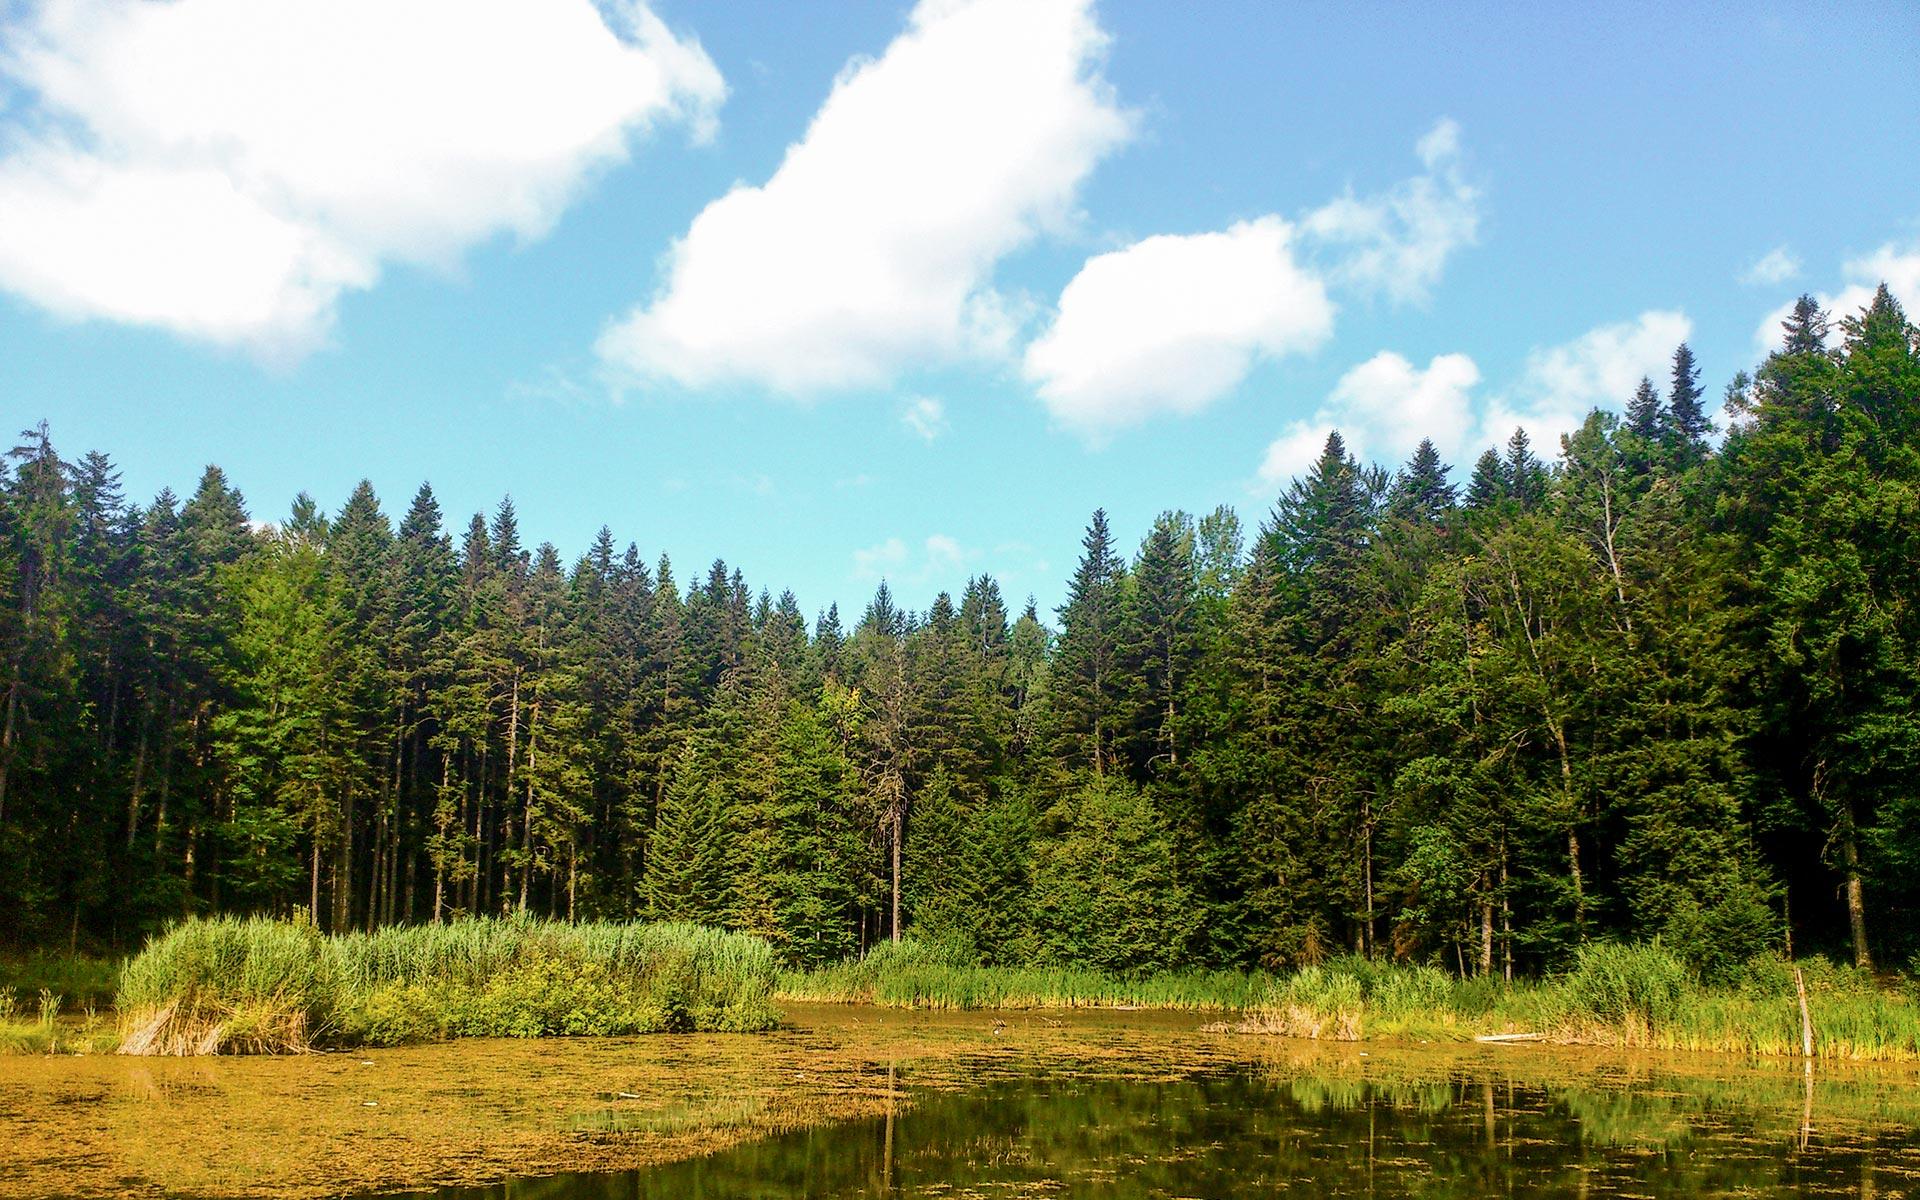 Šume su najvažniji prirodni resurs BiH - Avaz